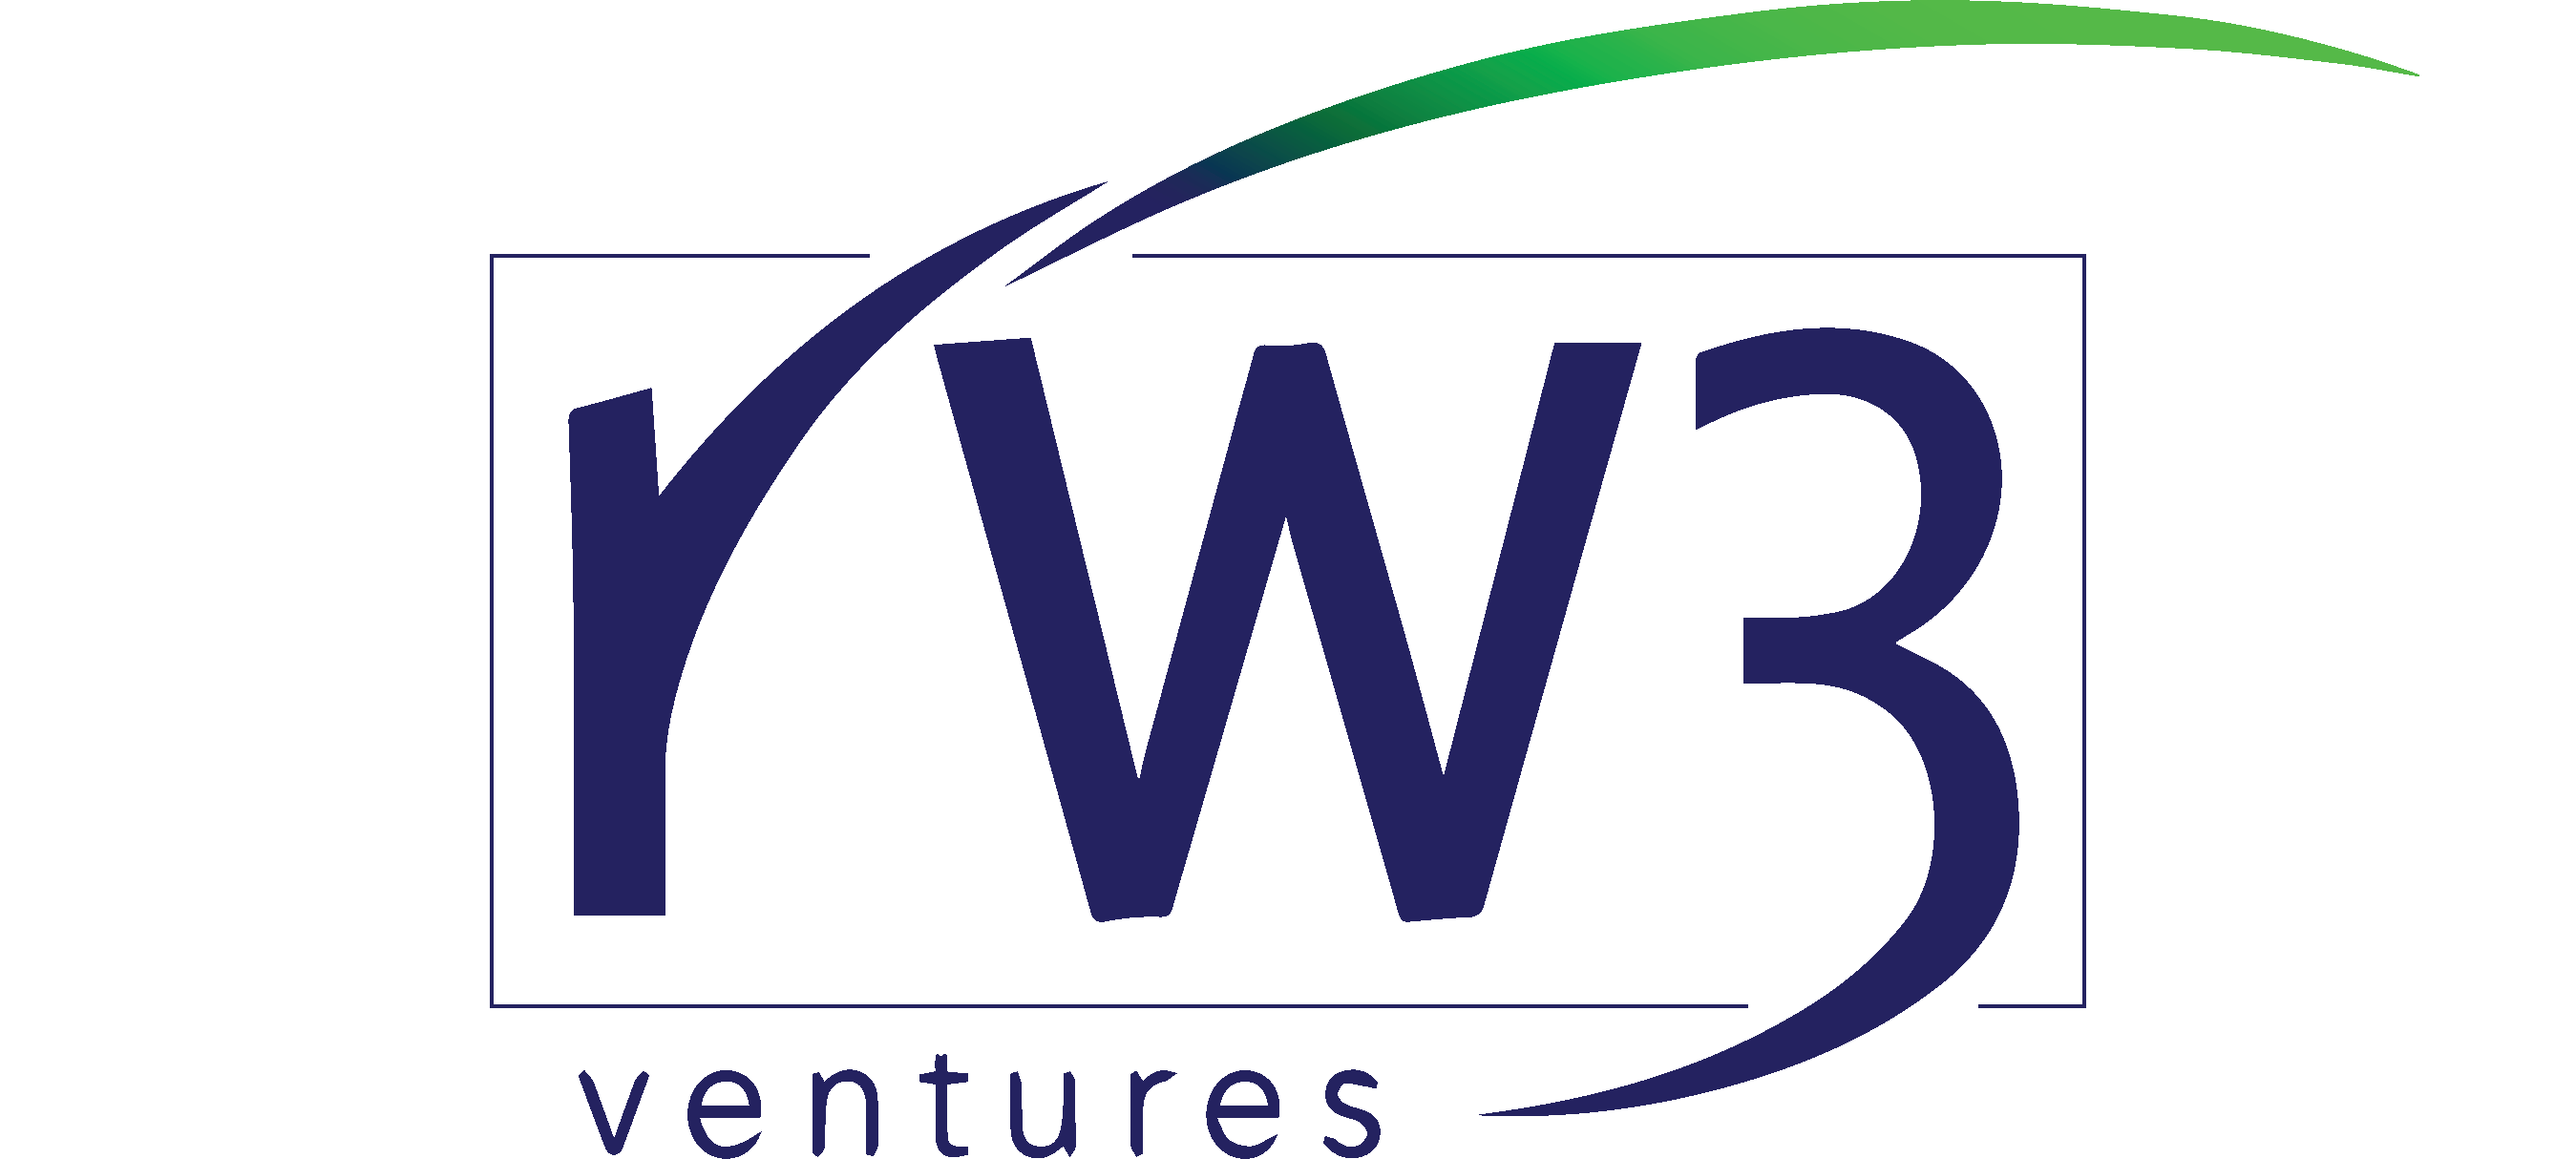 RW3 Ventures